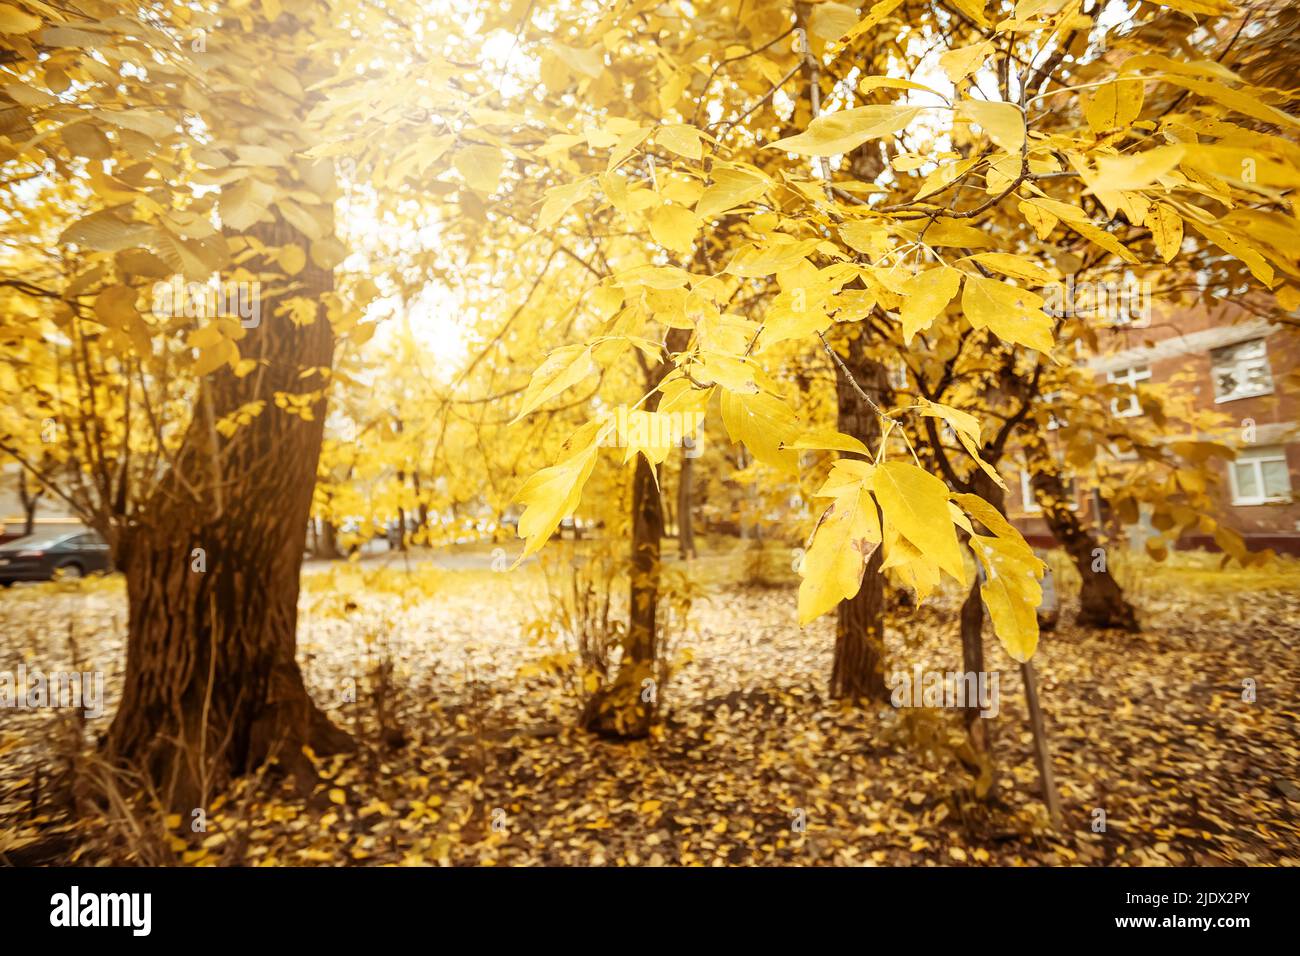 Les feuilles commencent à devenir jaunes sur une branche d'arbre. Début de l'automne. Mise au point sélective Banque D'Images